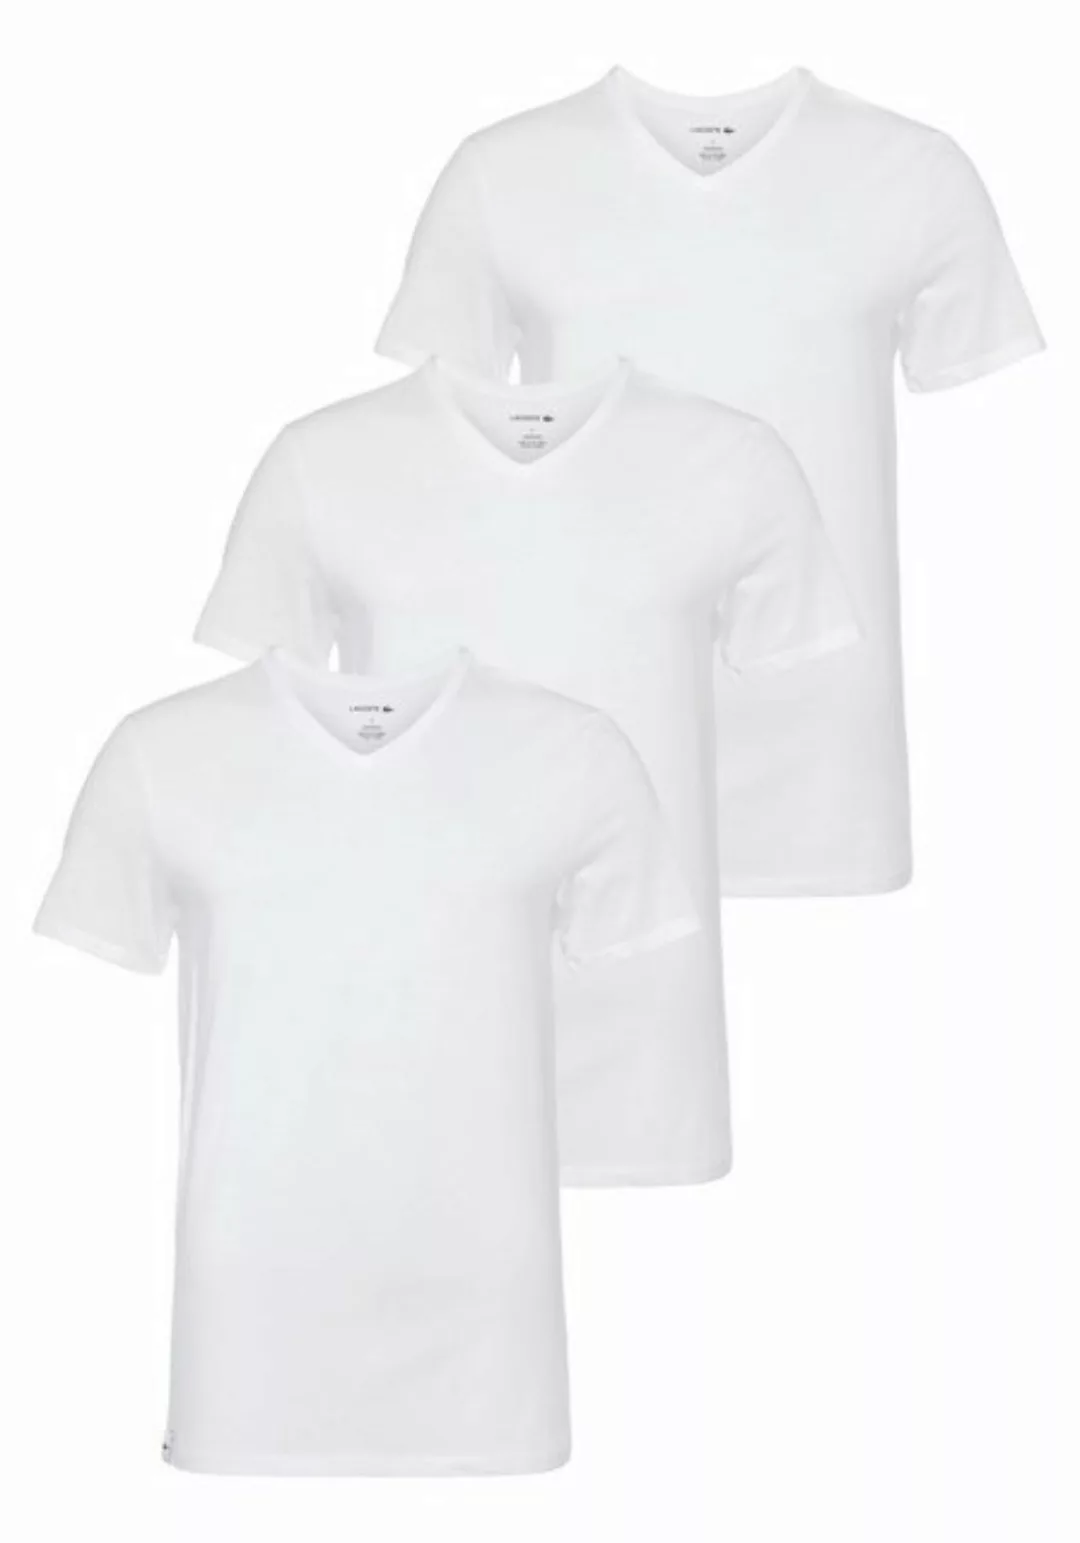 Lacoste T-Shirt günstig online kaufen